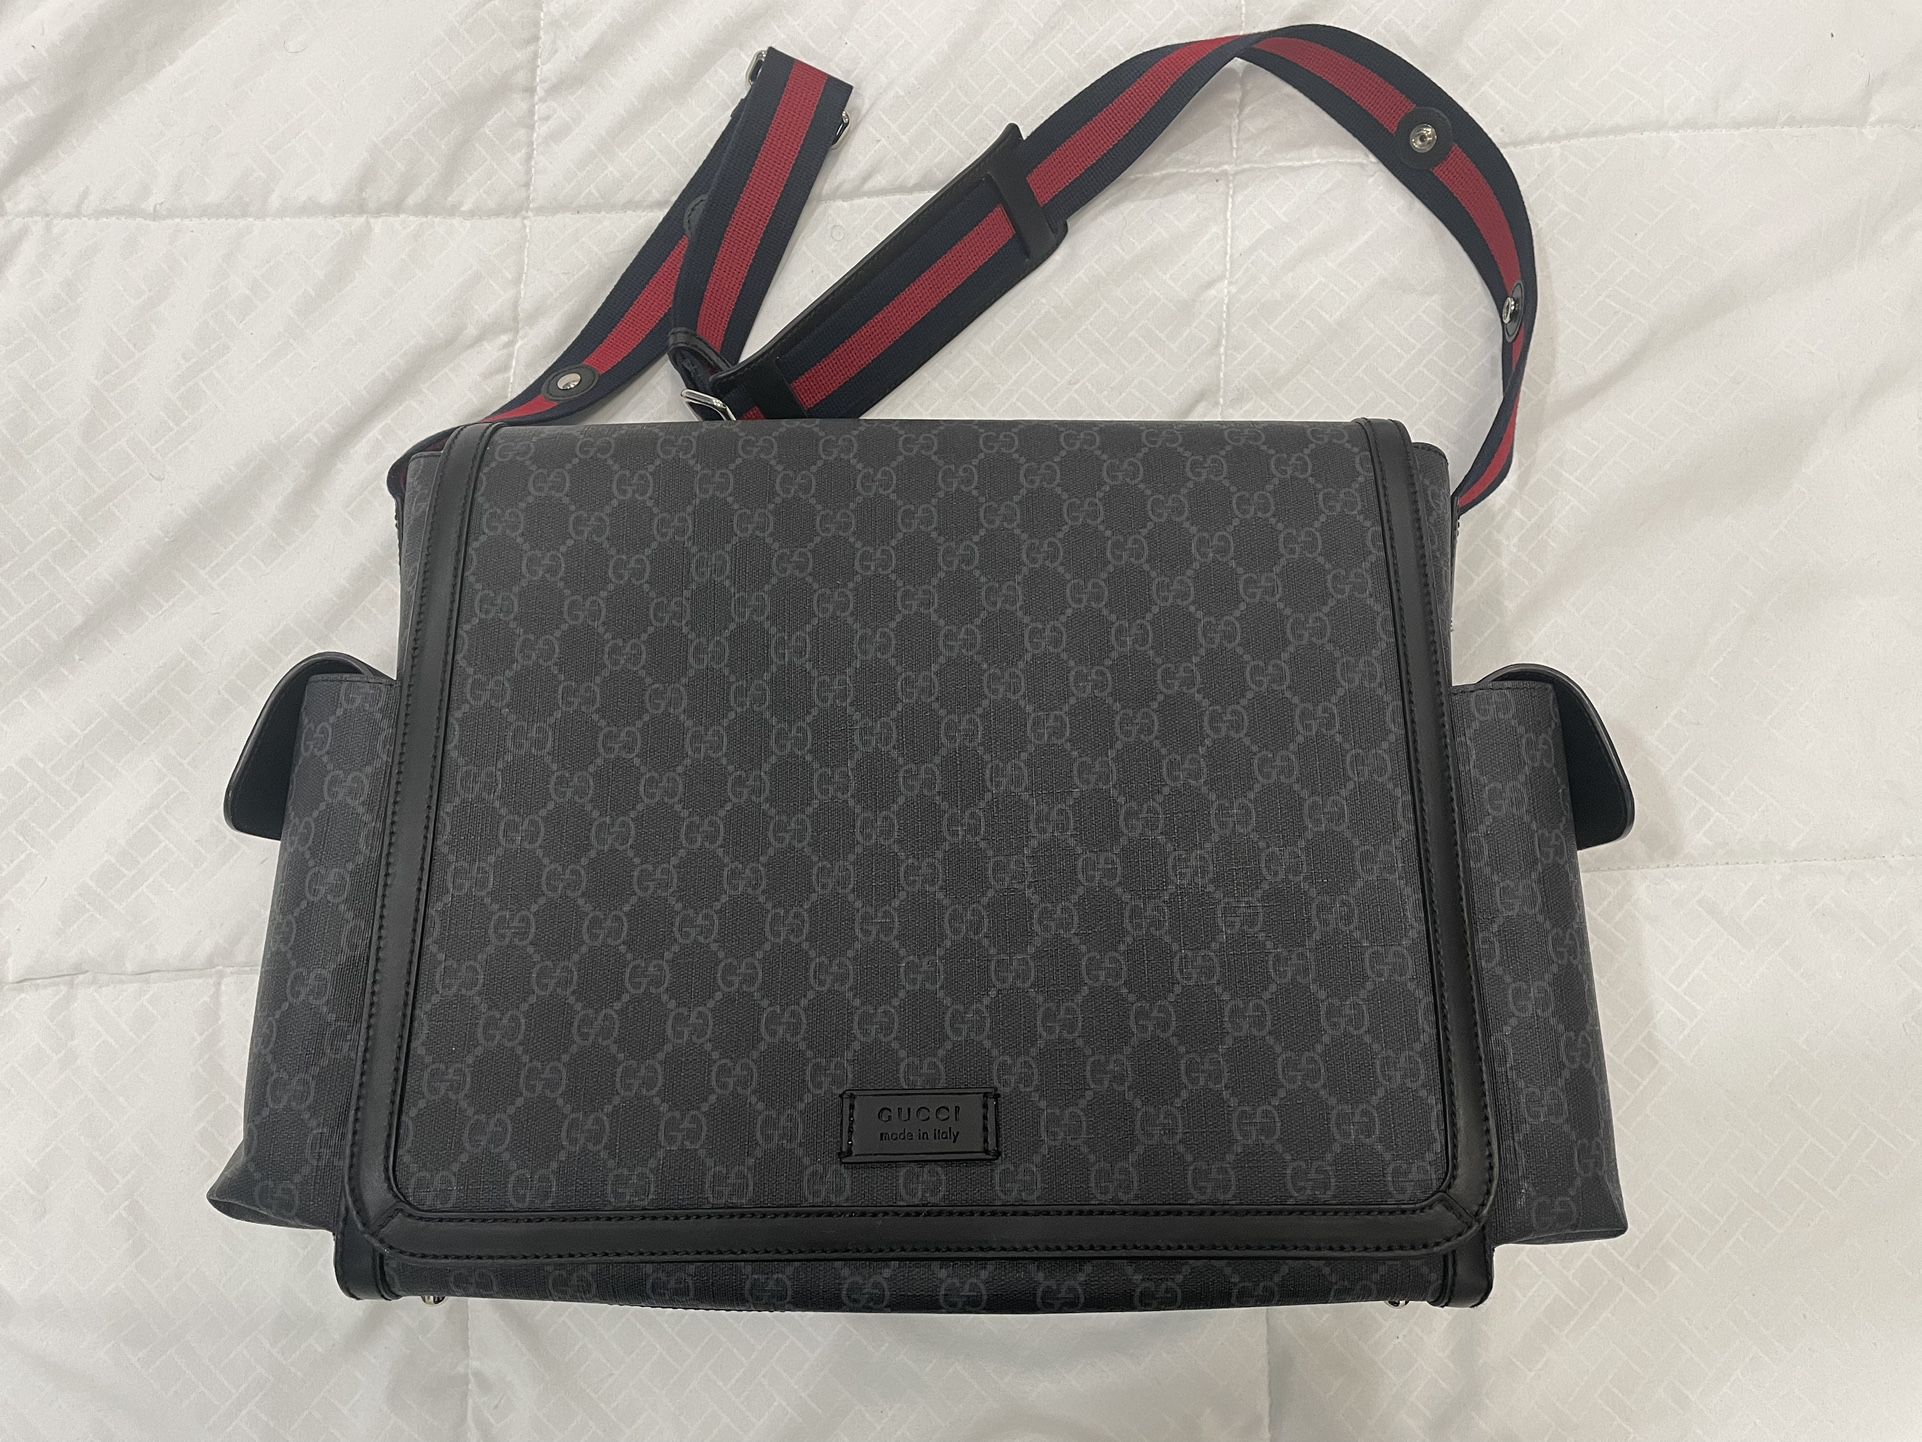 Authentic Gucci GG Supreme Diaper Bag